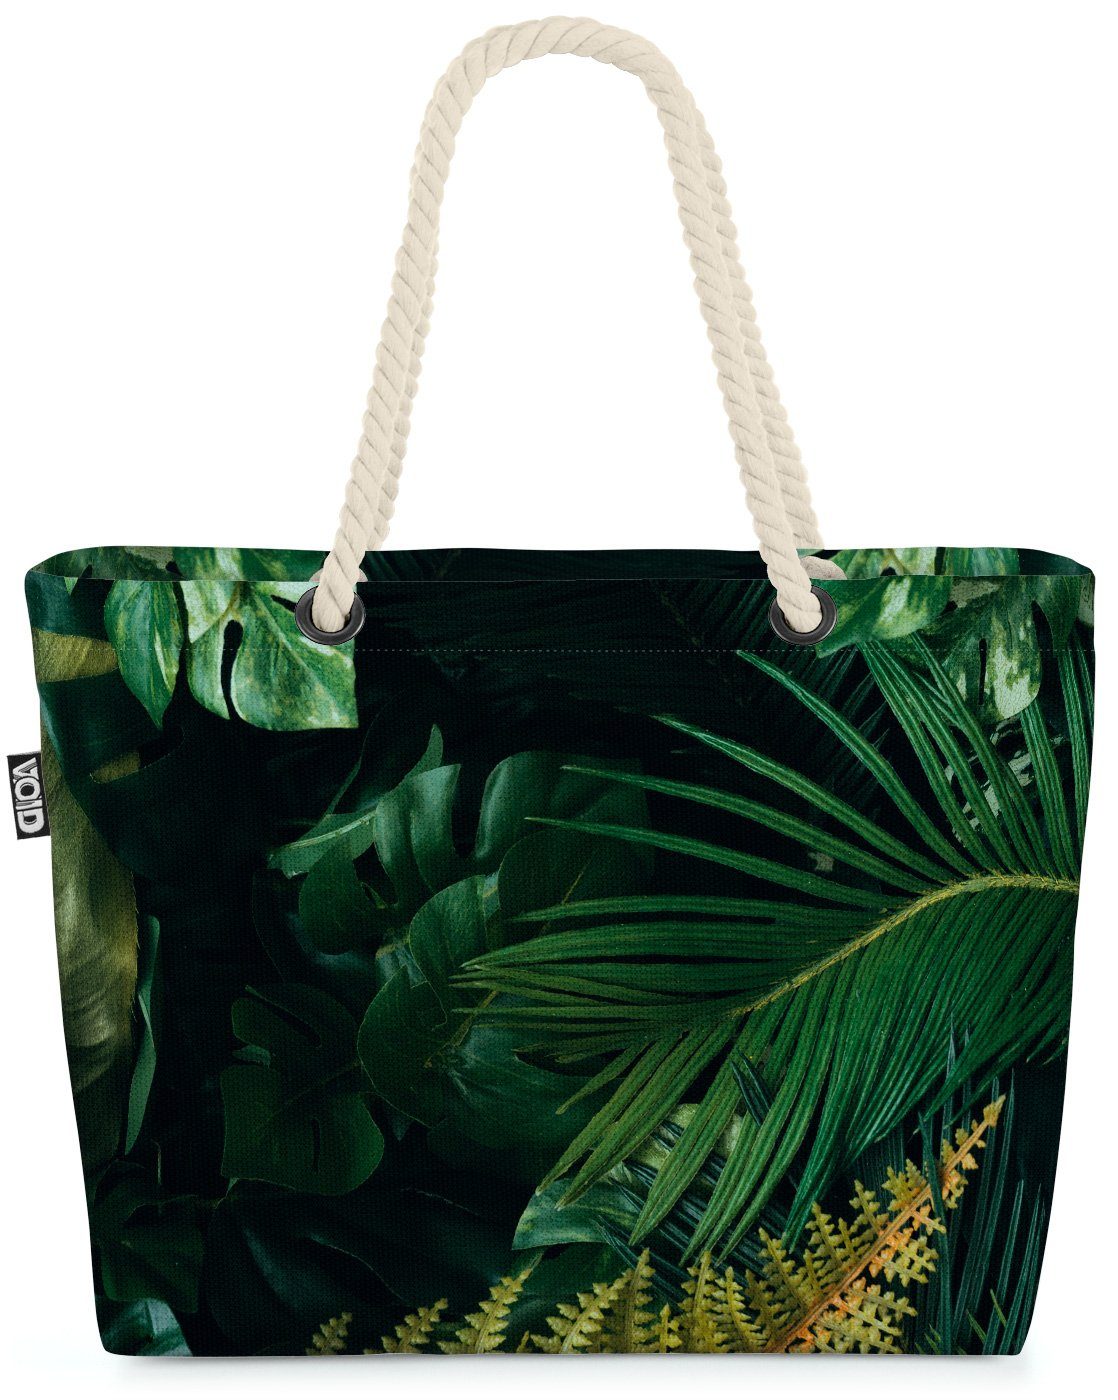 VOID Urlaub tropisch Palmen (1-tlg), Beach Blätter reise Tropen Hawaii Safari Farn Palmen Strandtasche Bag